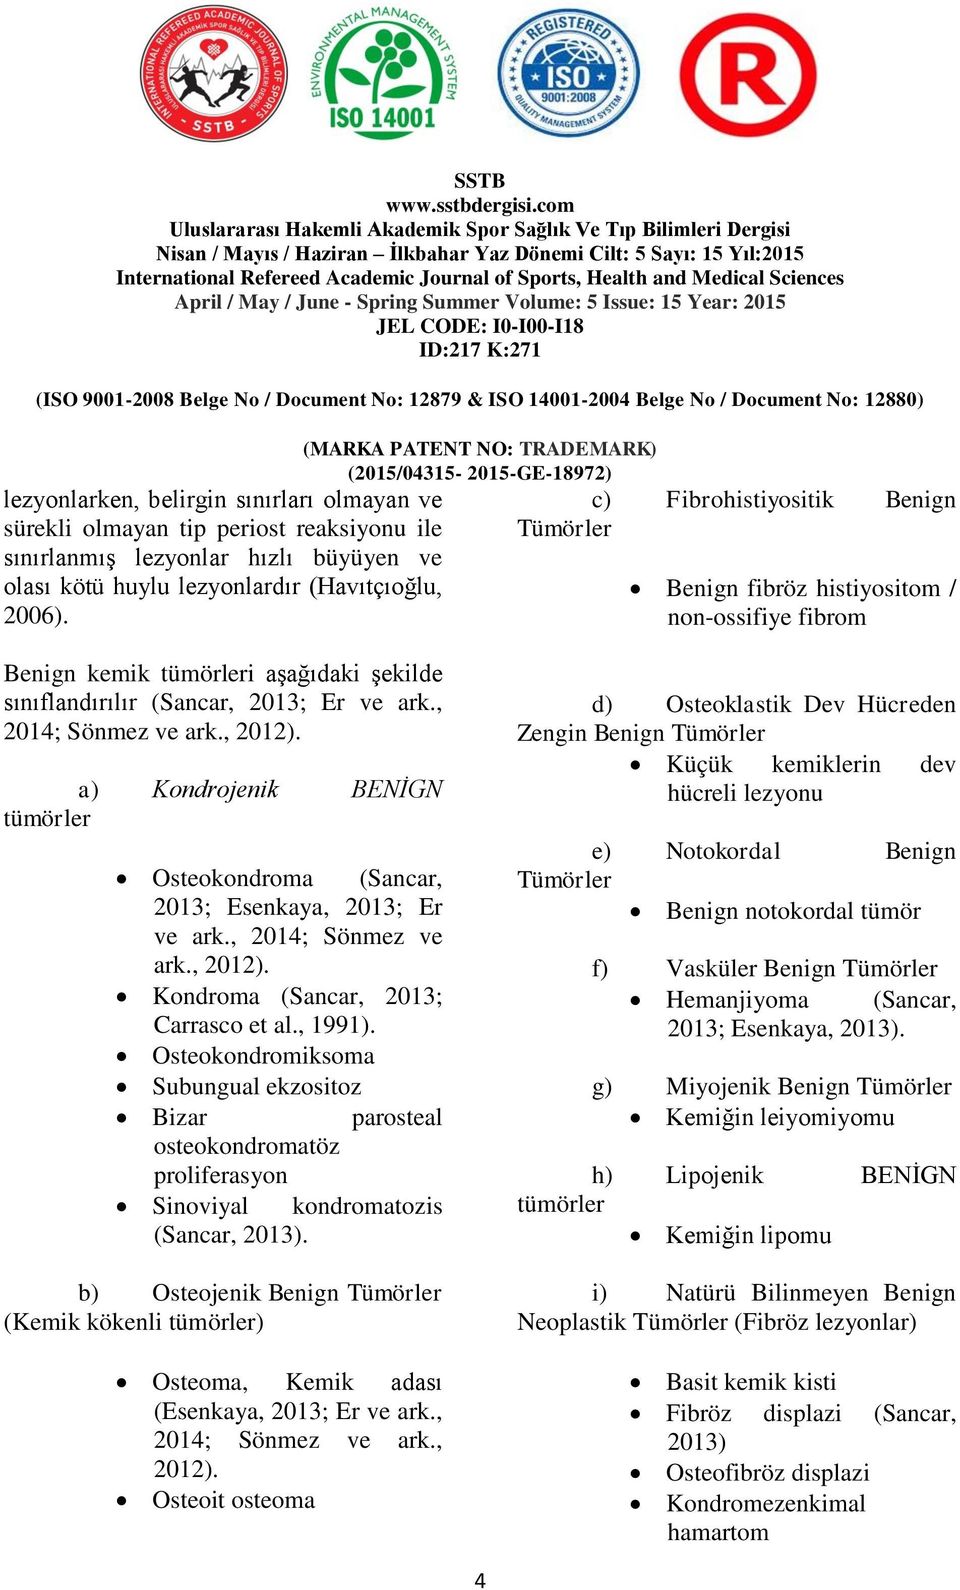 a) Kondrojenik BENİGN tümörler Osteokondroma (Sancar, 2013; Esenkaya, 2013; Er ve ark., 2014; Sönmez ve ark., 2012). Kondroma (Sancar, 2013; Carrasco et al., 1991).